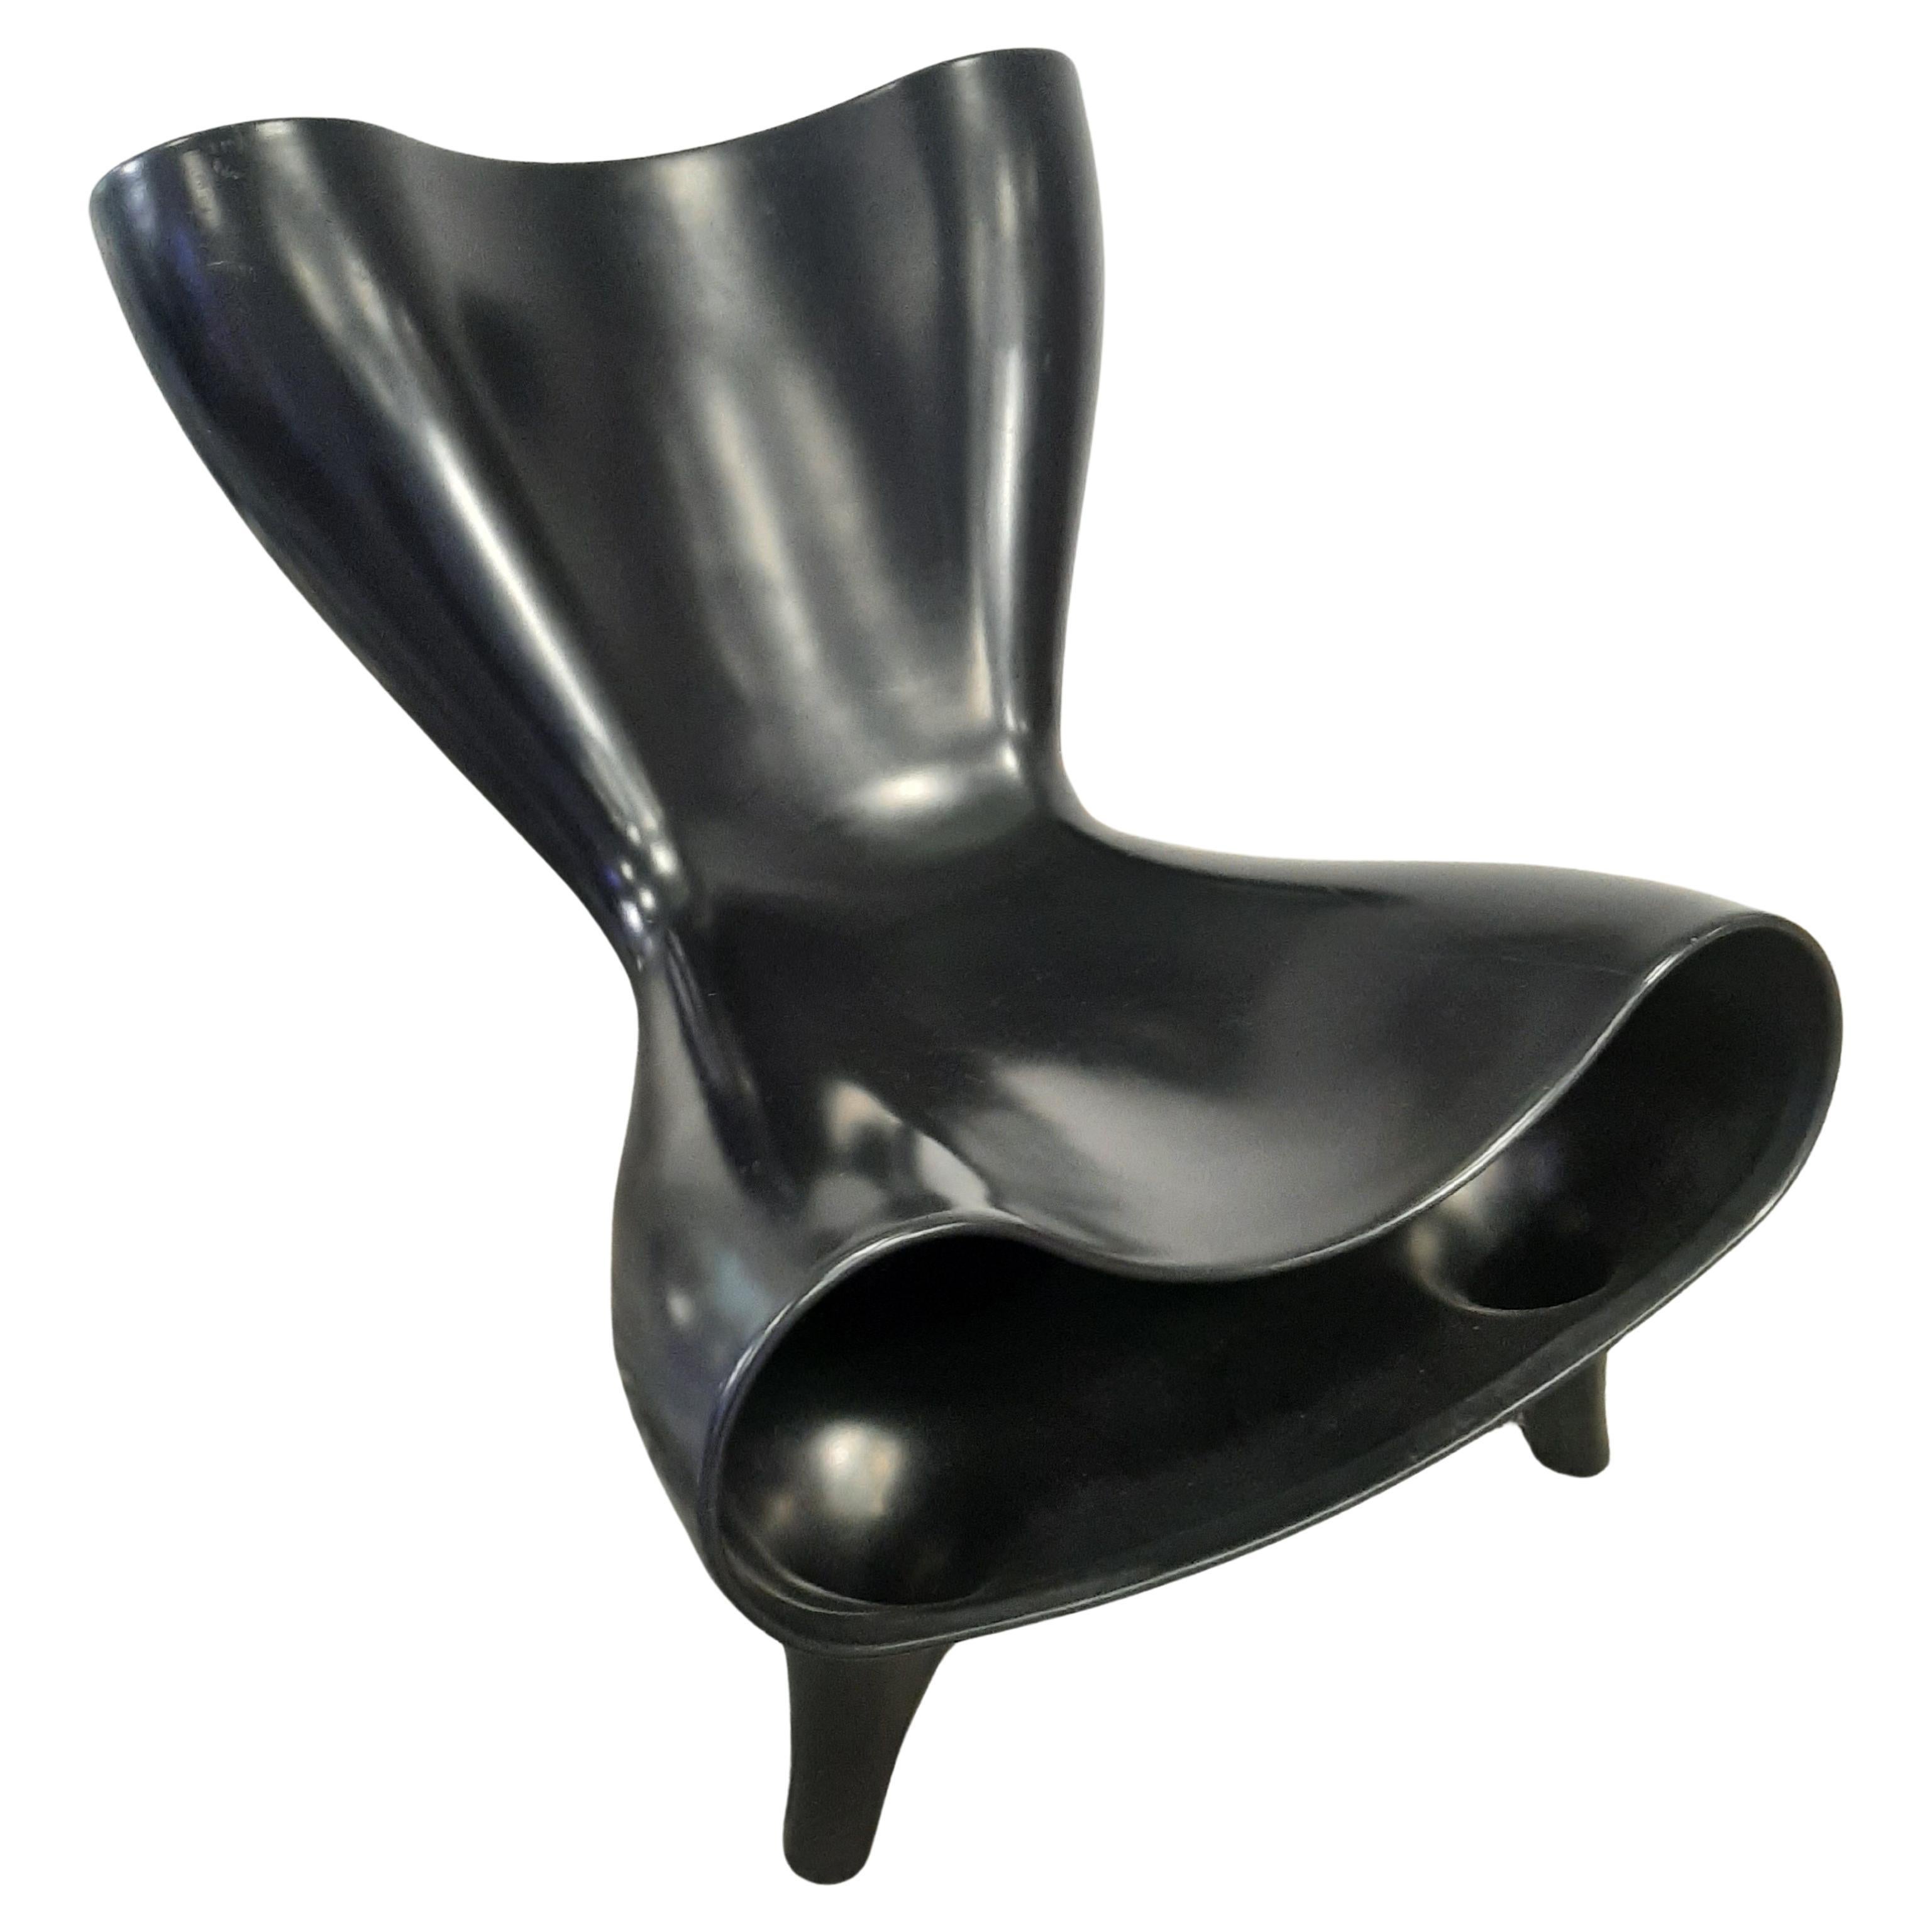 Poltrona sedia modello Orgone designer Marc Newson